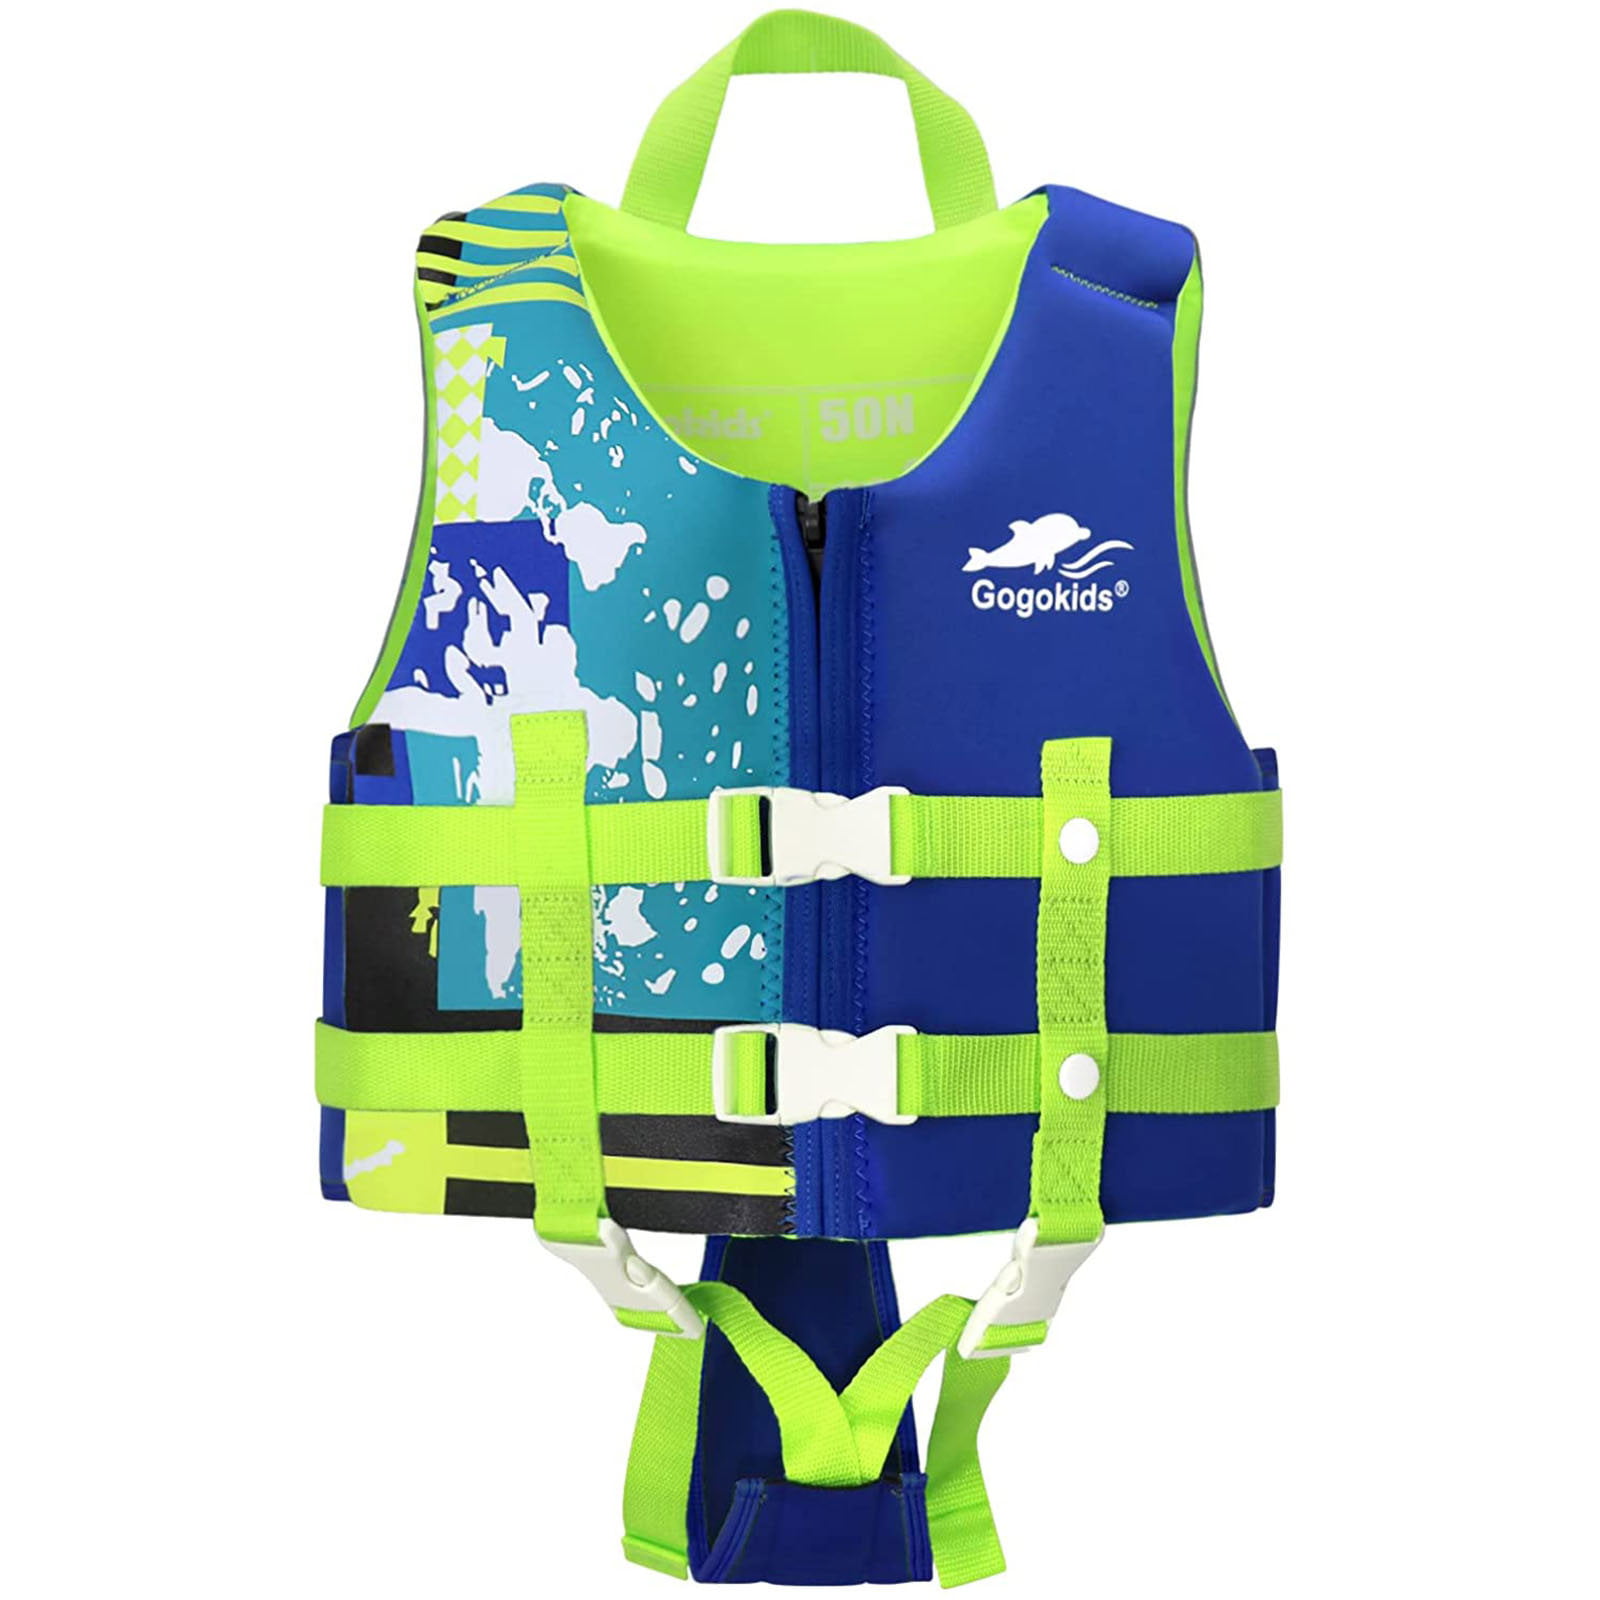 Kids Swim Float Vest Swimming Arm Bands Buoyancy Aid Toddler Life Safe Jacket 